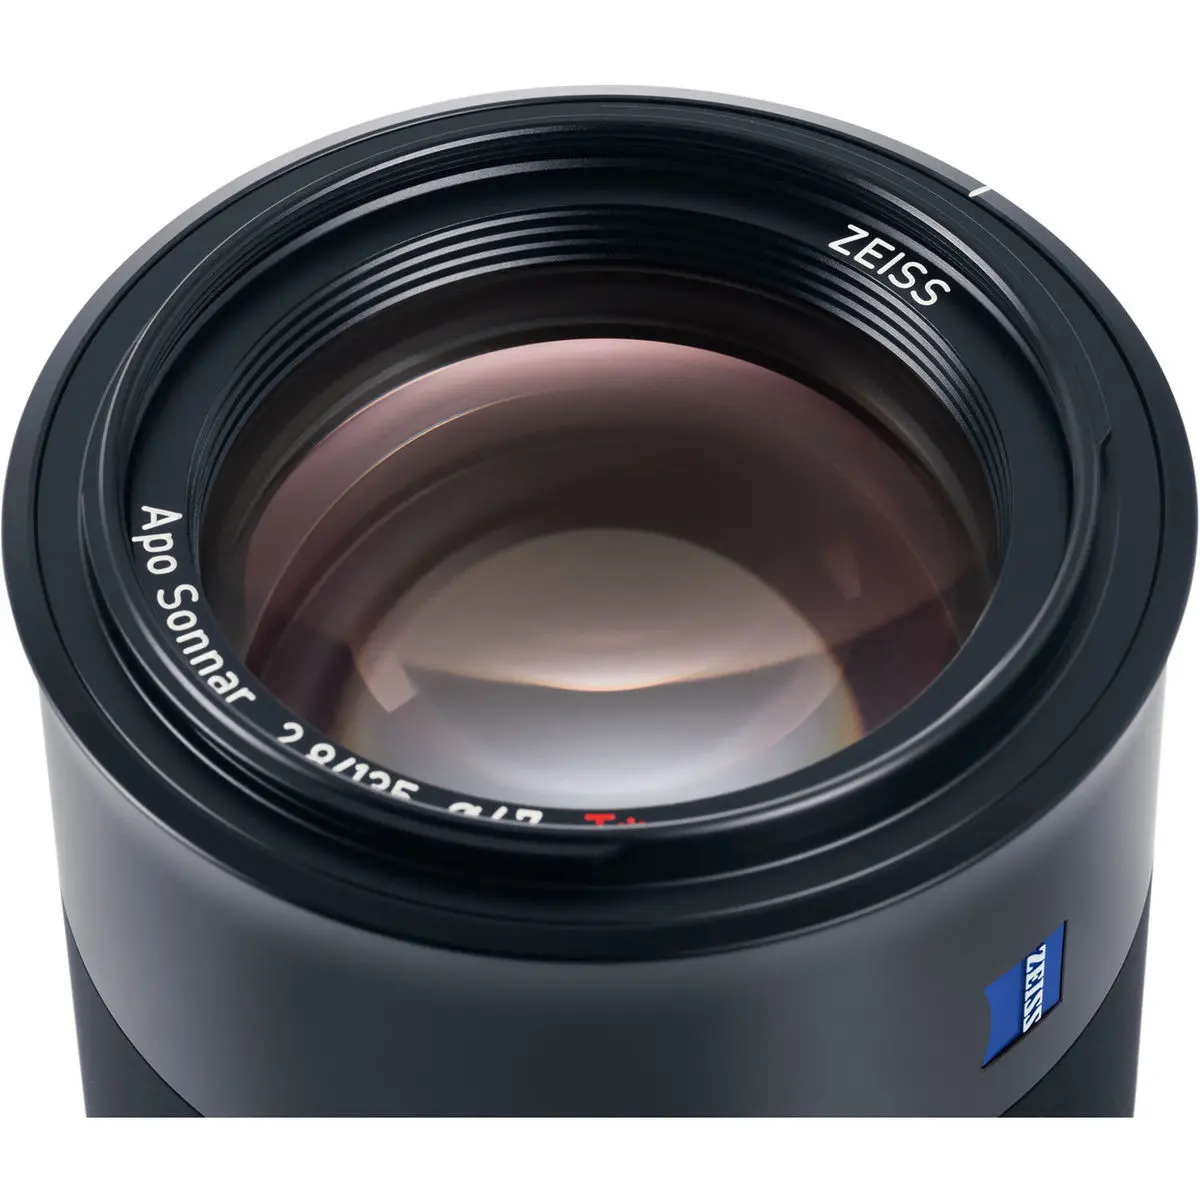 4. Carl Zeiss Batis 135mm F2.8 for Sony E mount Lens